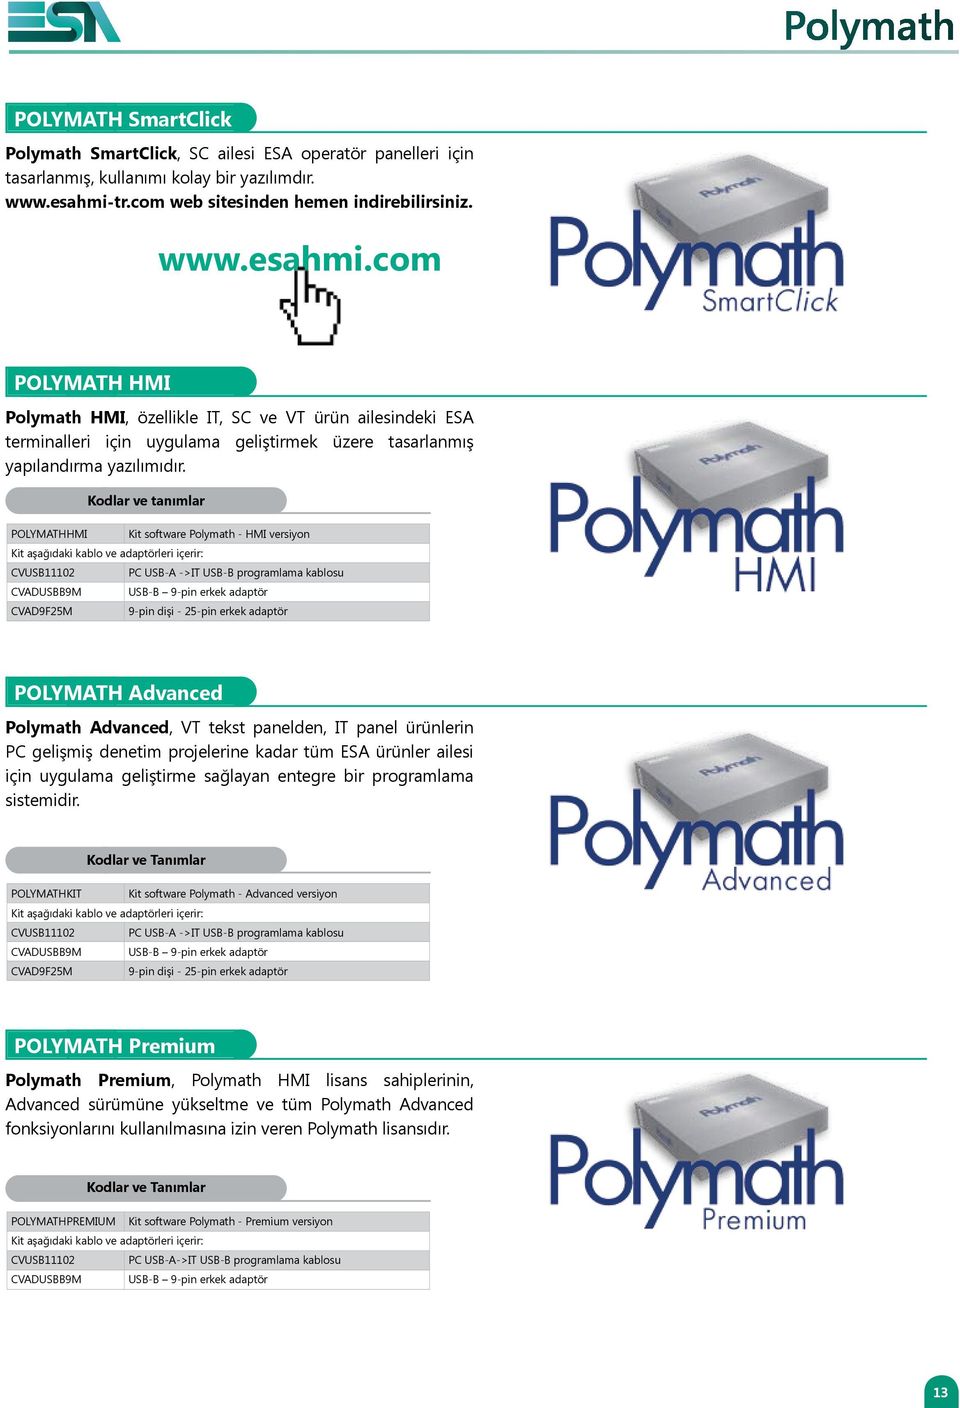 com POLYMATH HMI Polymath HMI, özellikle IT, SC ve VT ürün ailesindeki ESA terminalleri için uygulama geliştirmek üzere tasarlanmış yapılandırma yazılımıdır.